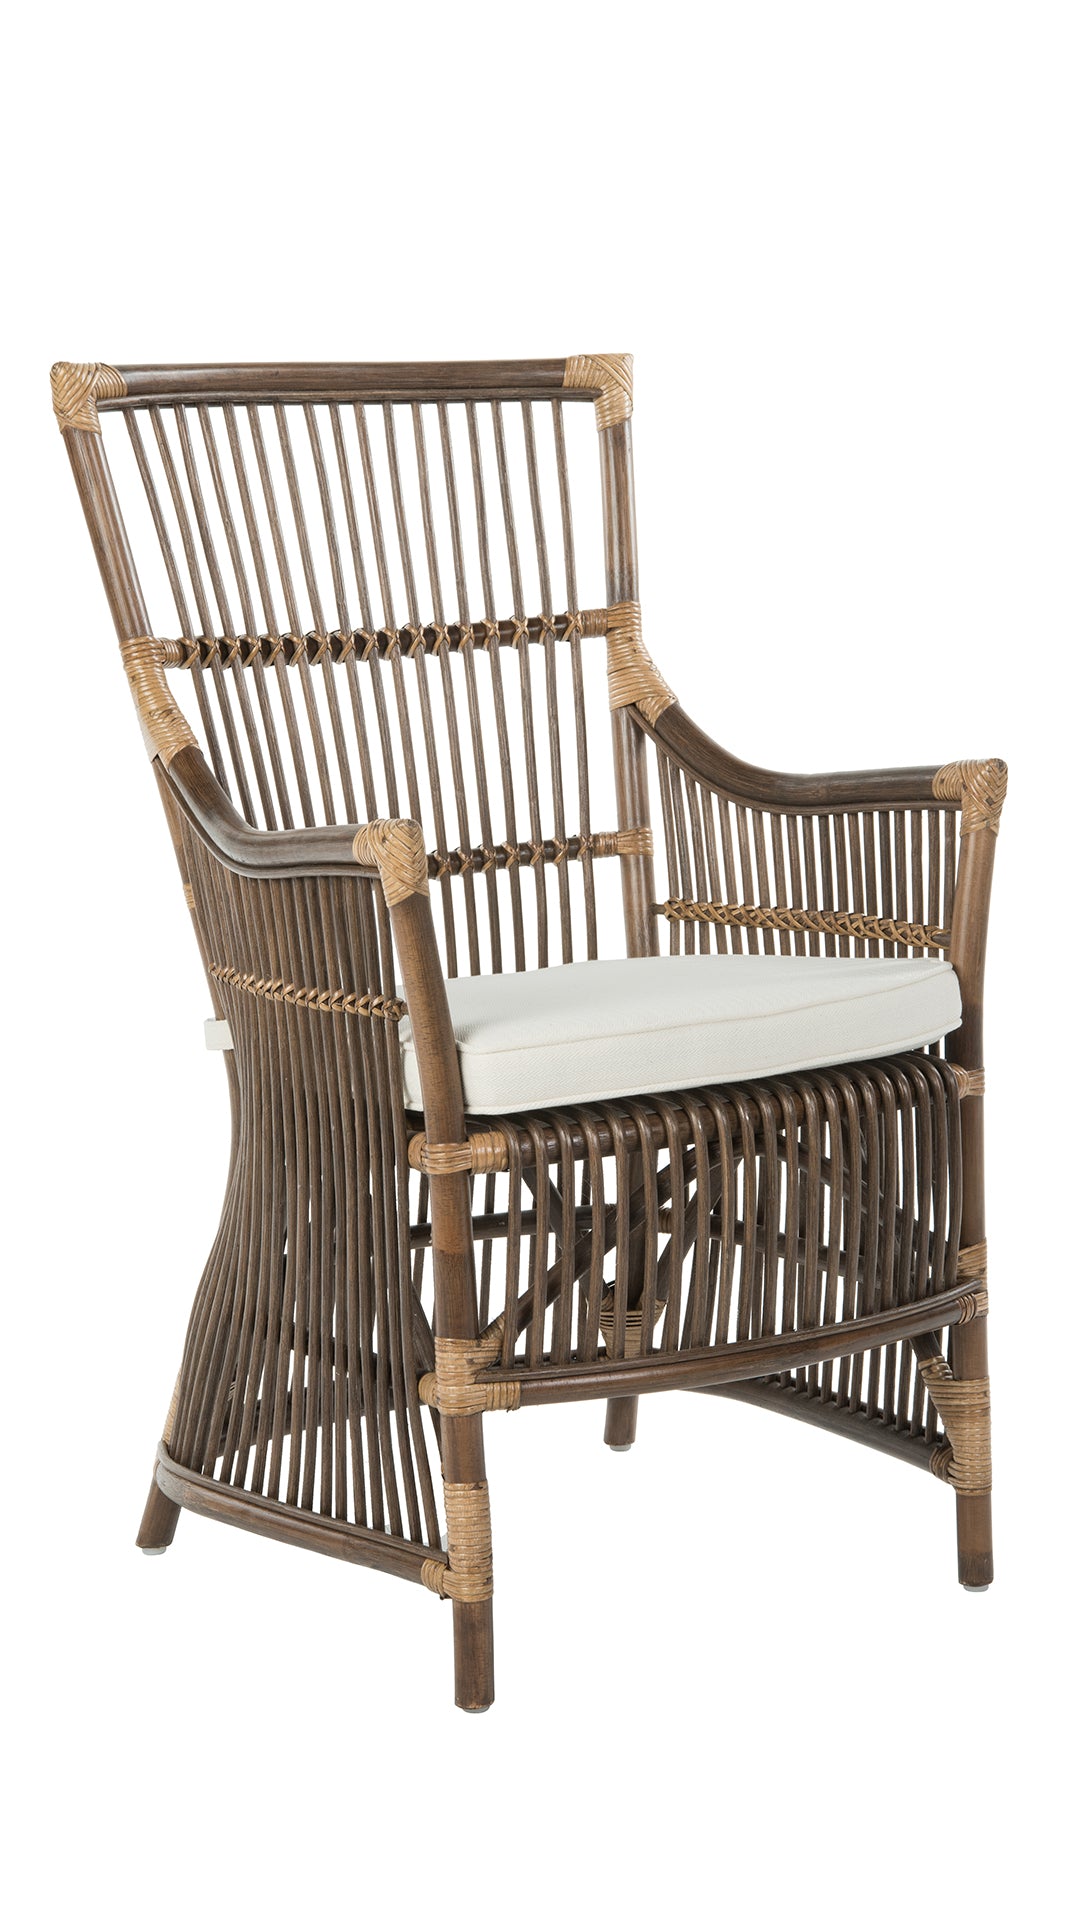 Wicker Chair Cushion